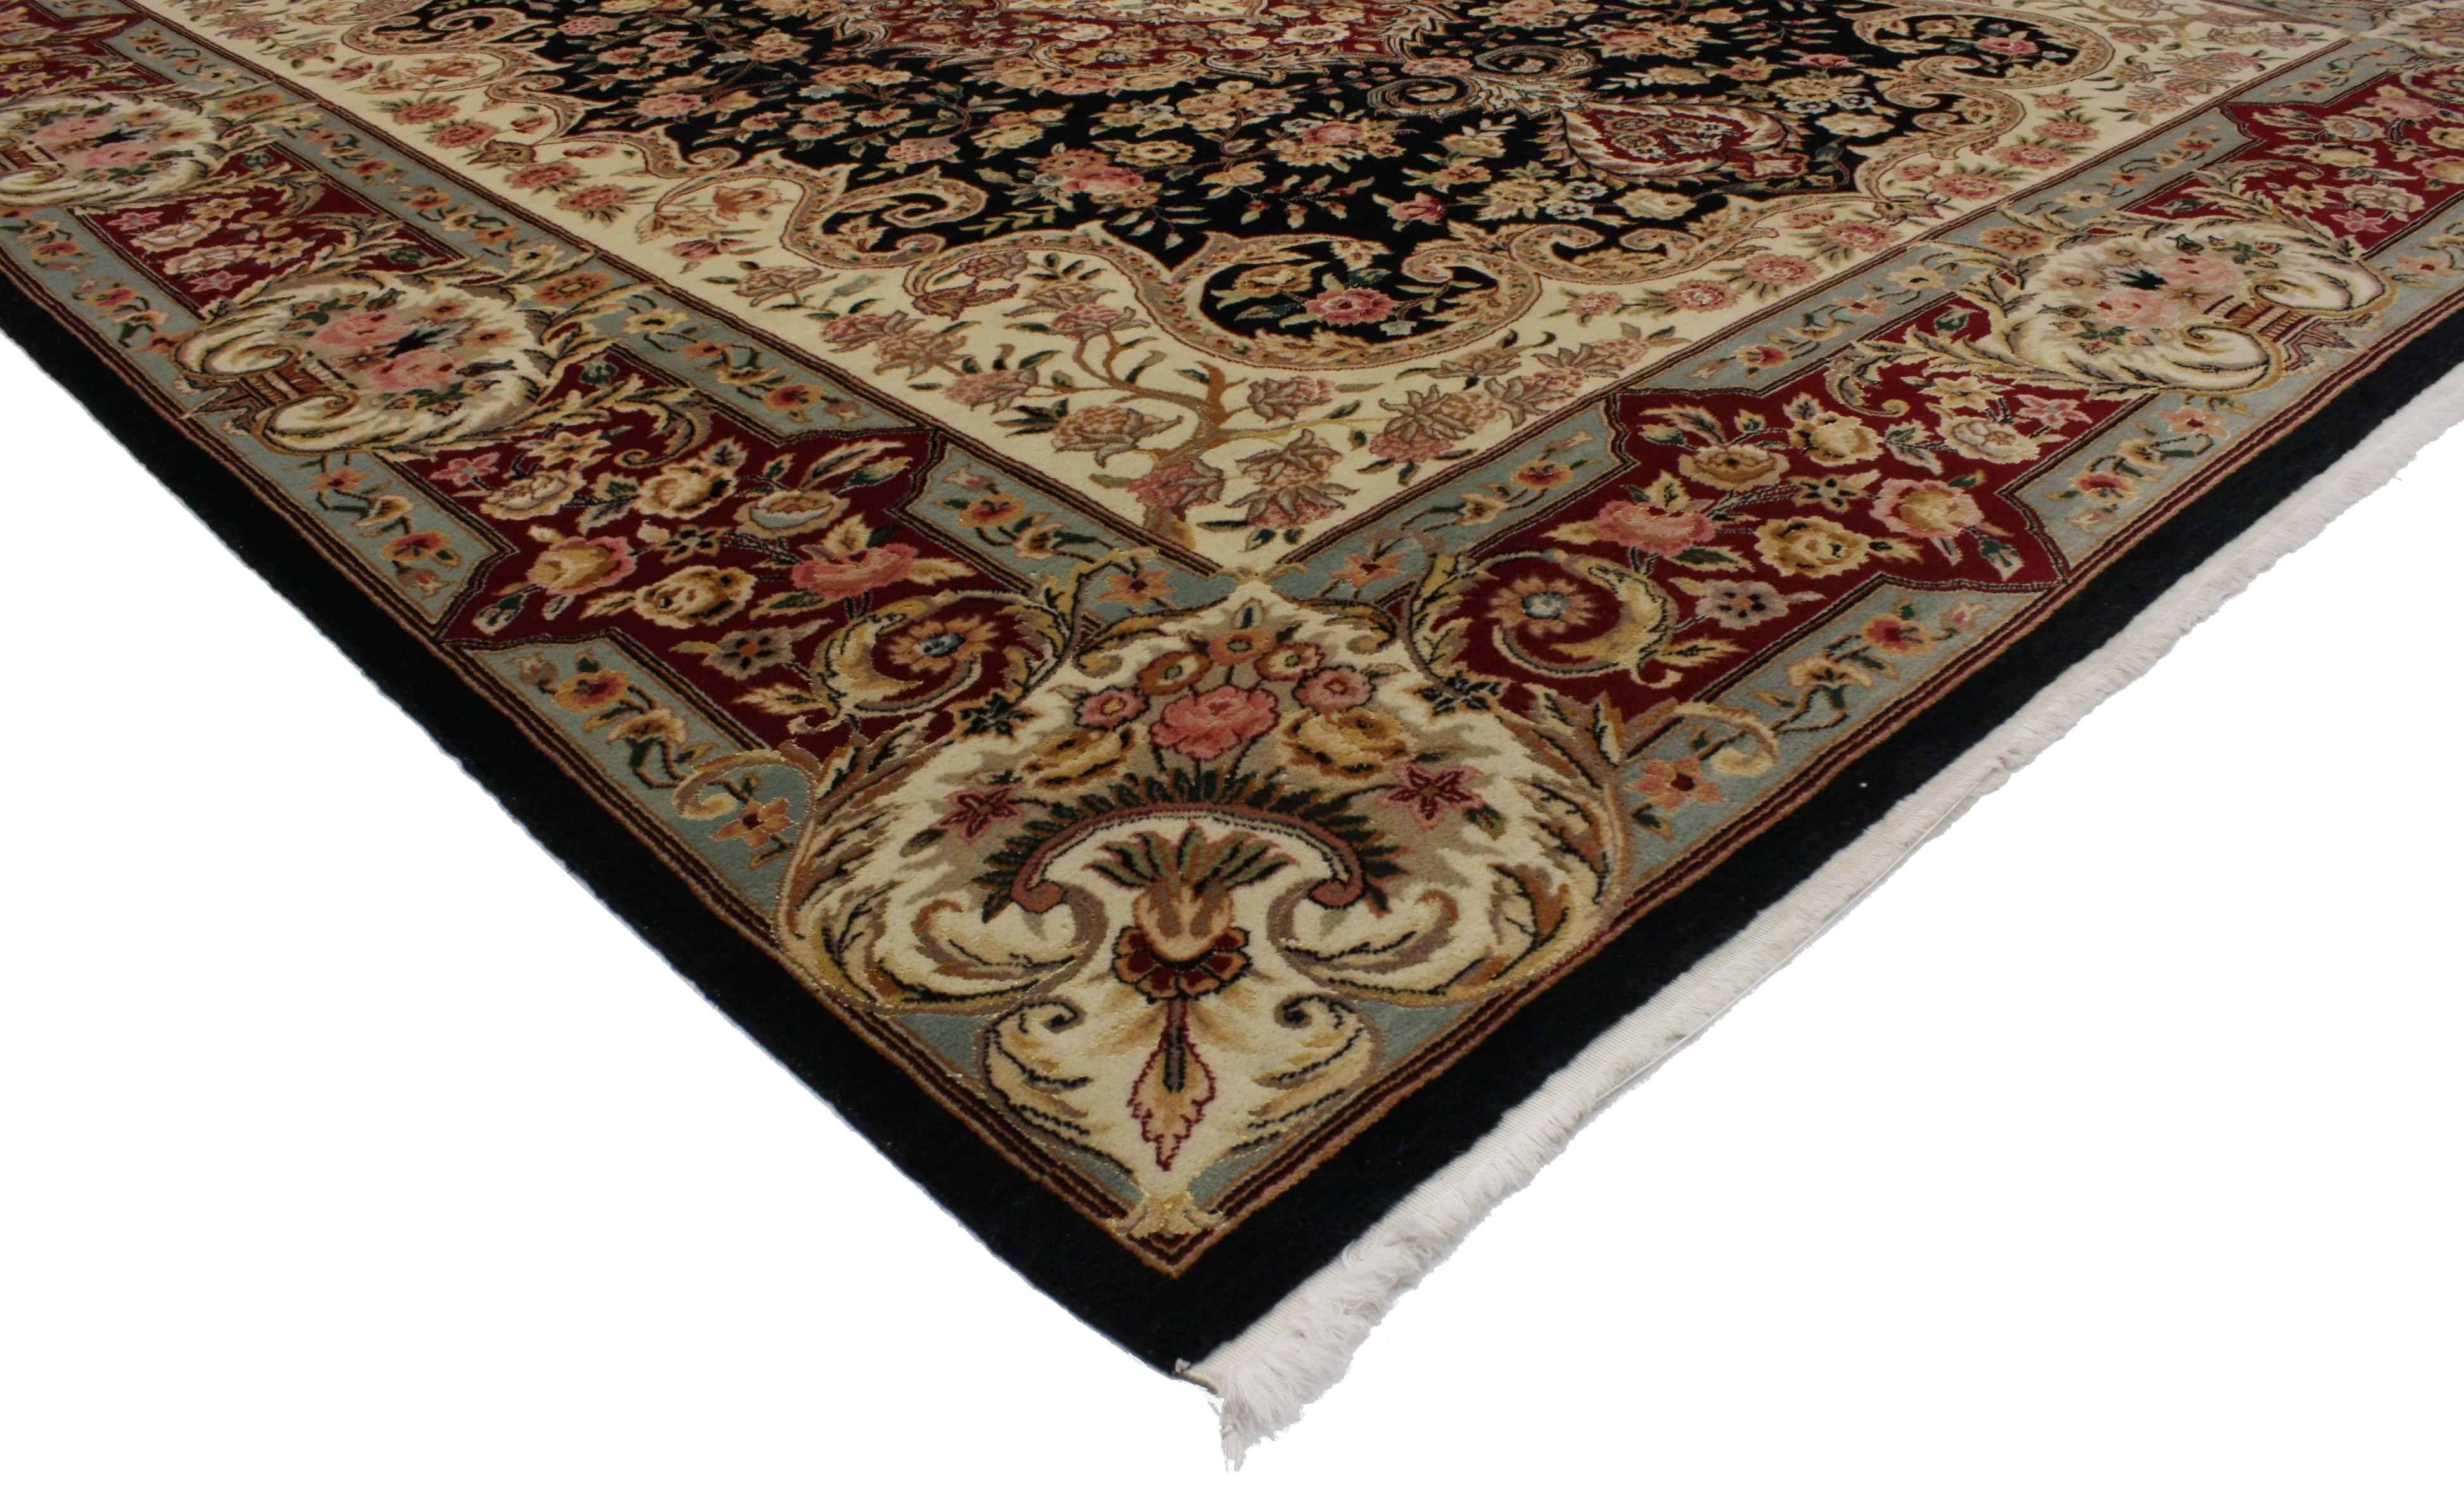 76698, Nouveau tapis de style persan avec motif traditionnel Kirman. Cet opulent tapis persan de style Kirman, en laine nouée à la main, présente un médaillon central complexe avec un motif floral stylisé en beige crème, bordeaux et rose. Le